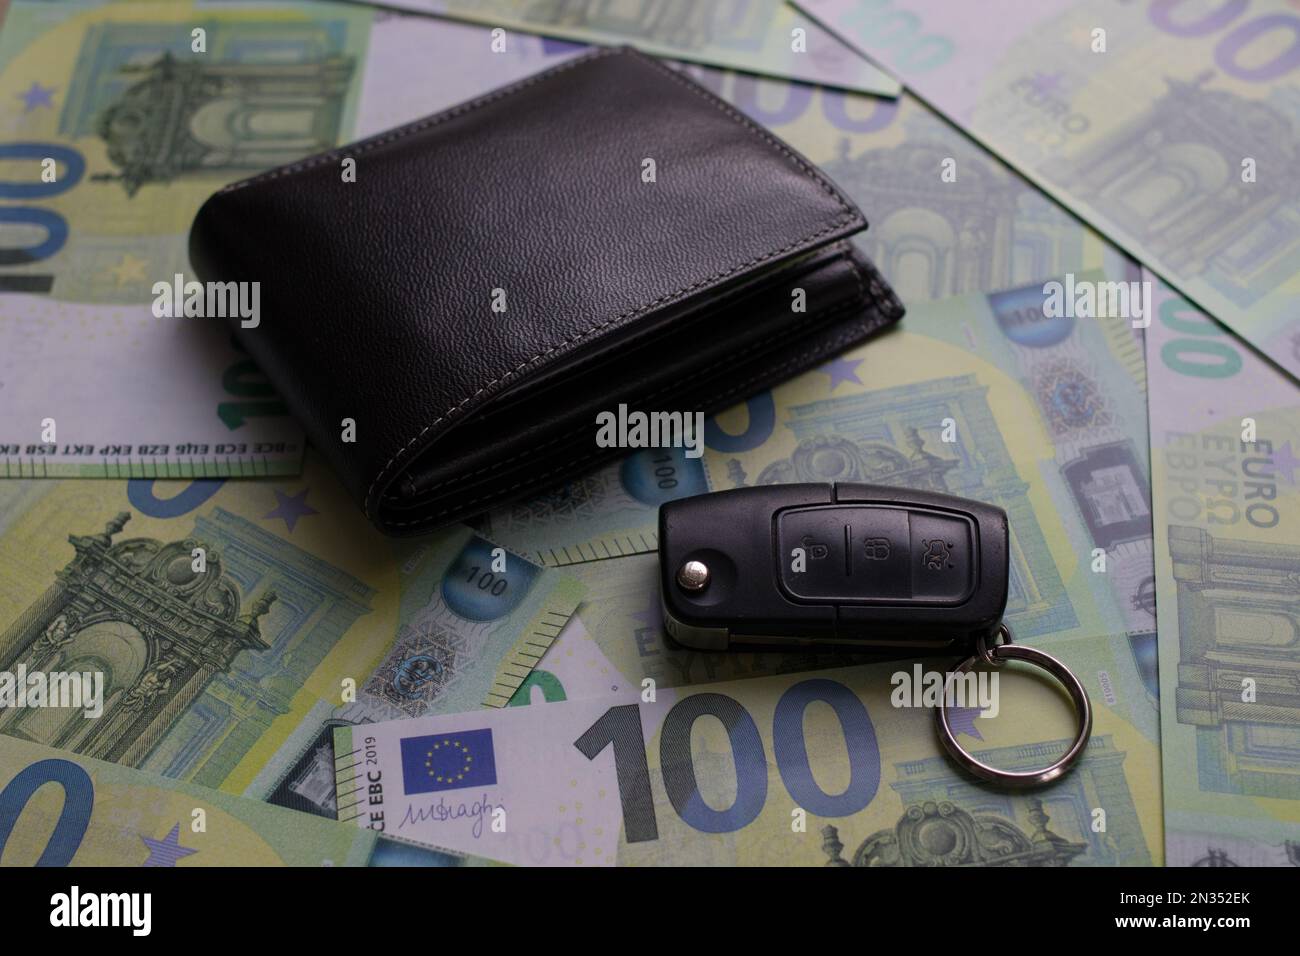 il portafoglio nero e la chiave dell'auto sono su banconote da 100 euro Foto Stock